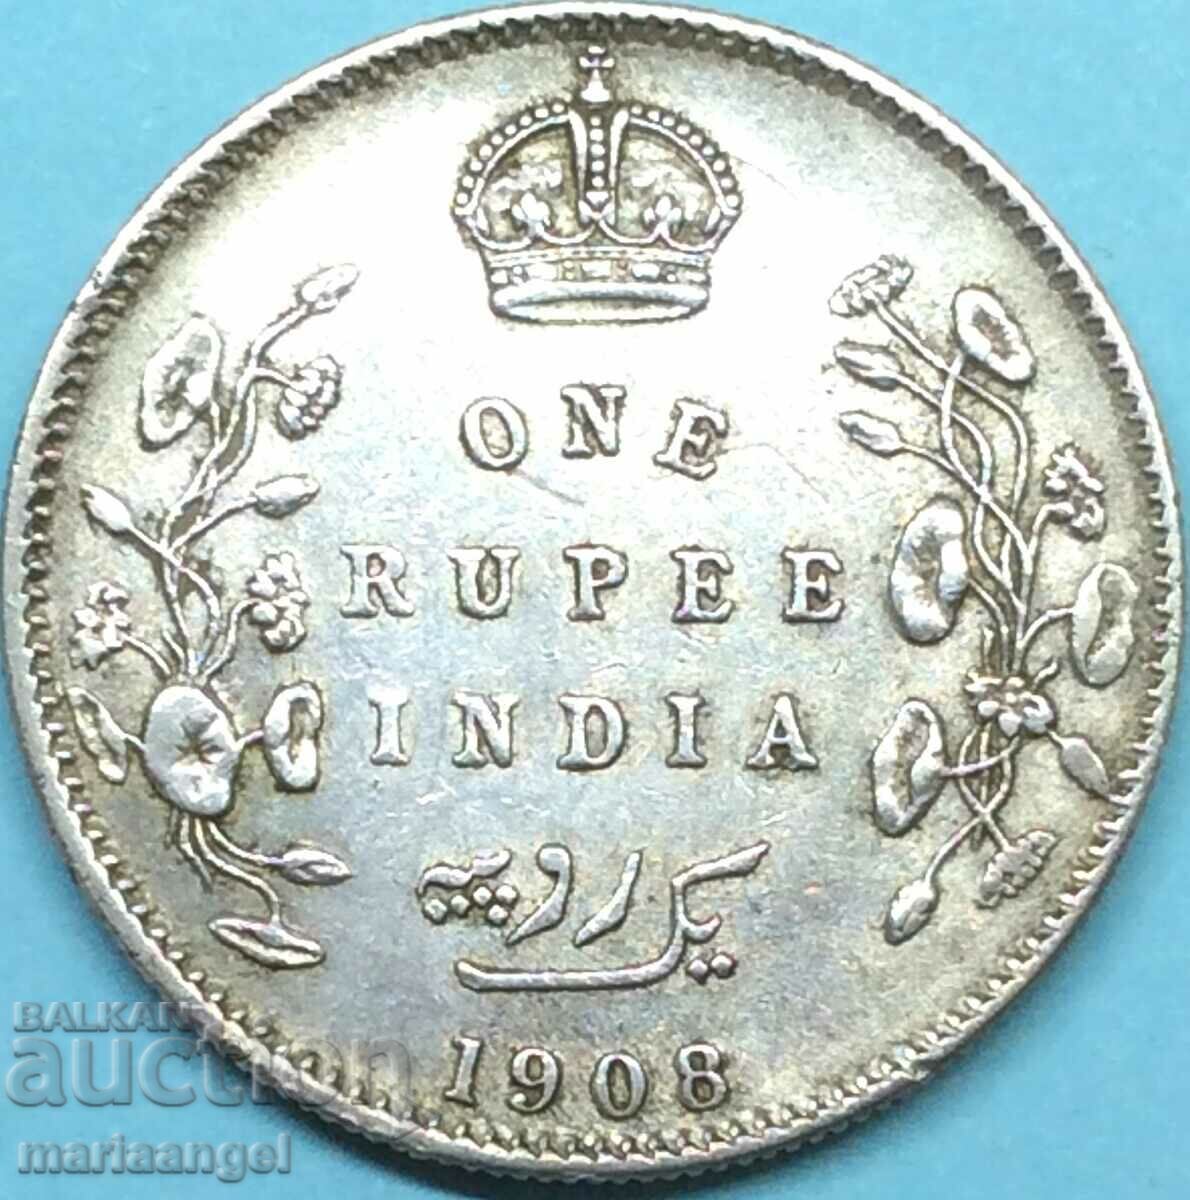 Βρετανική Ινδία 1 ρουπία 1908 30 χιλιοστά 11,63 χρόνια - σπάνιο έτος